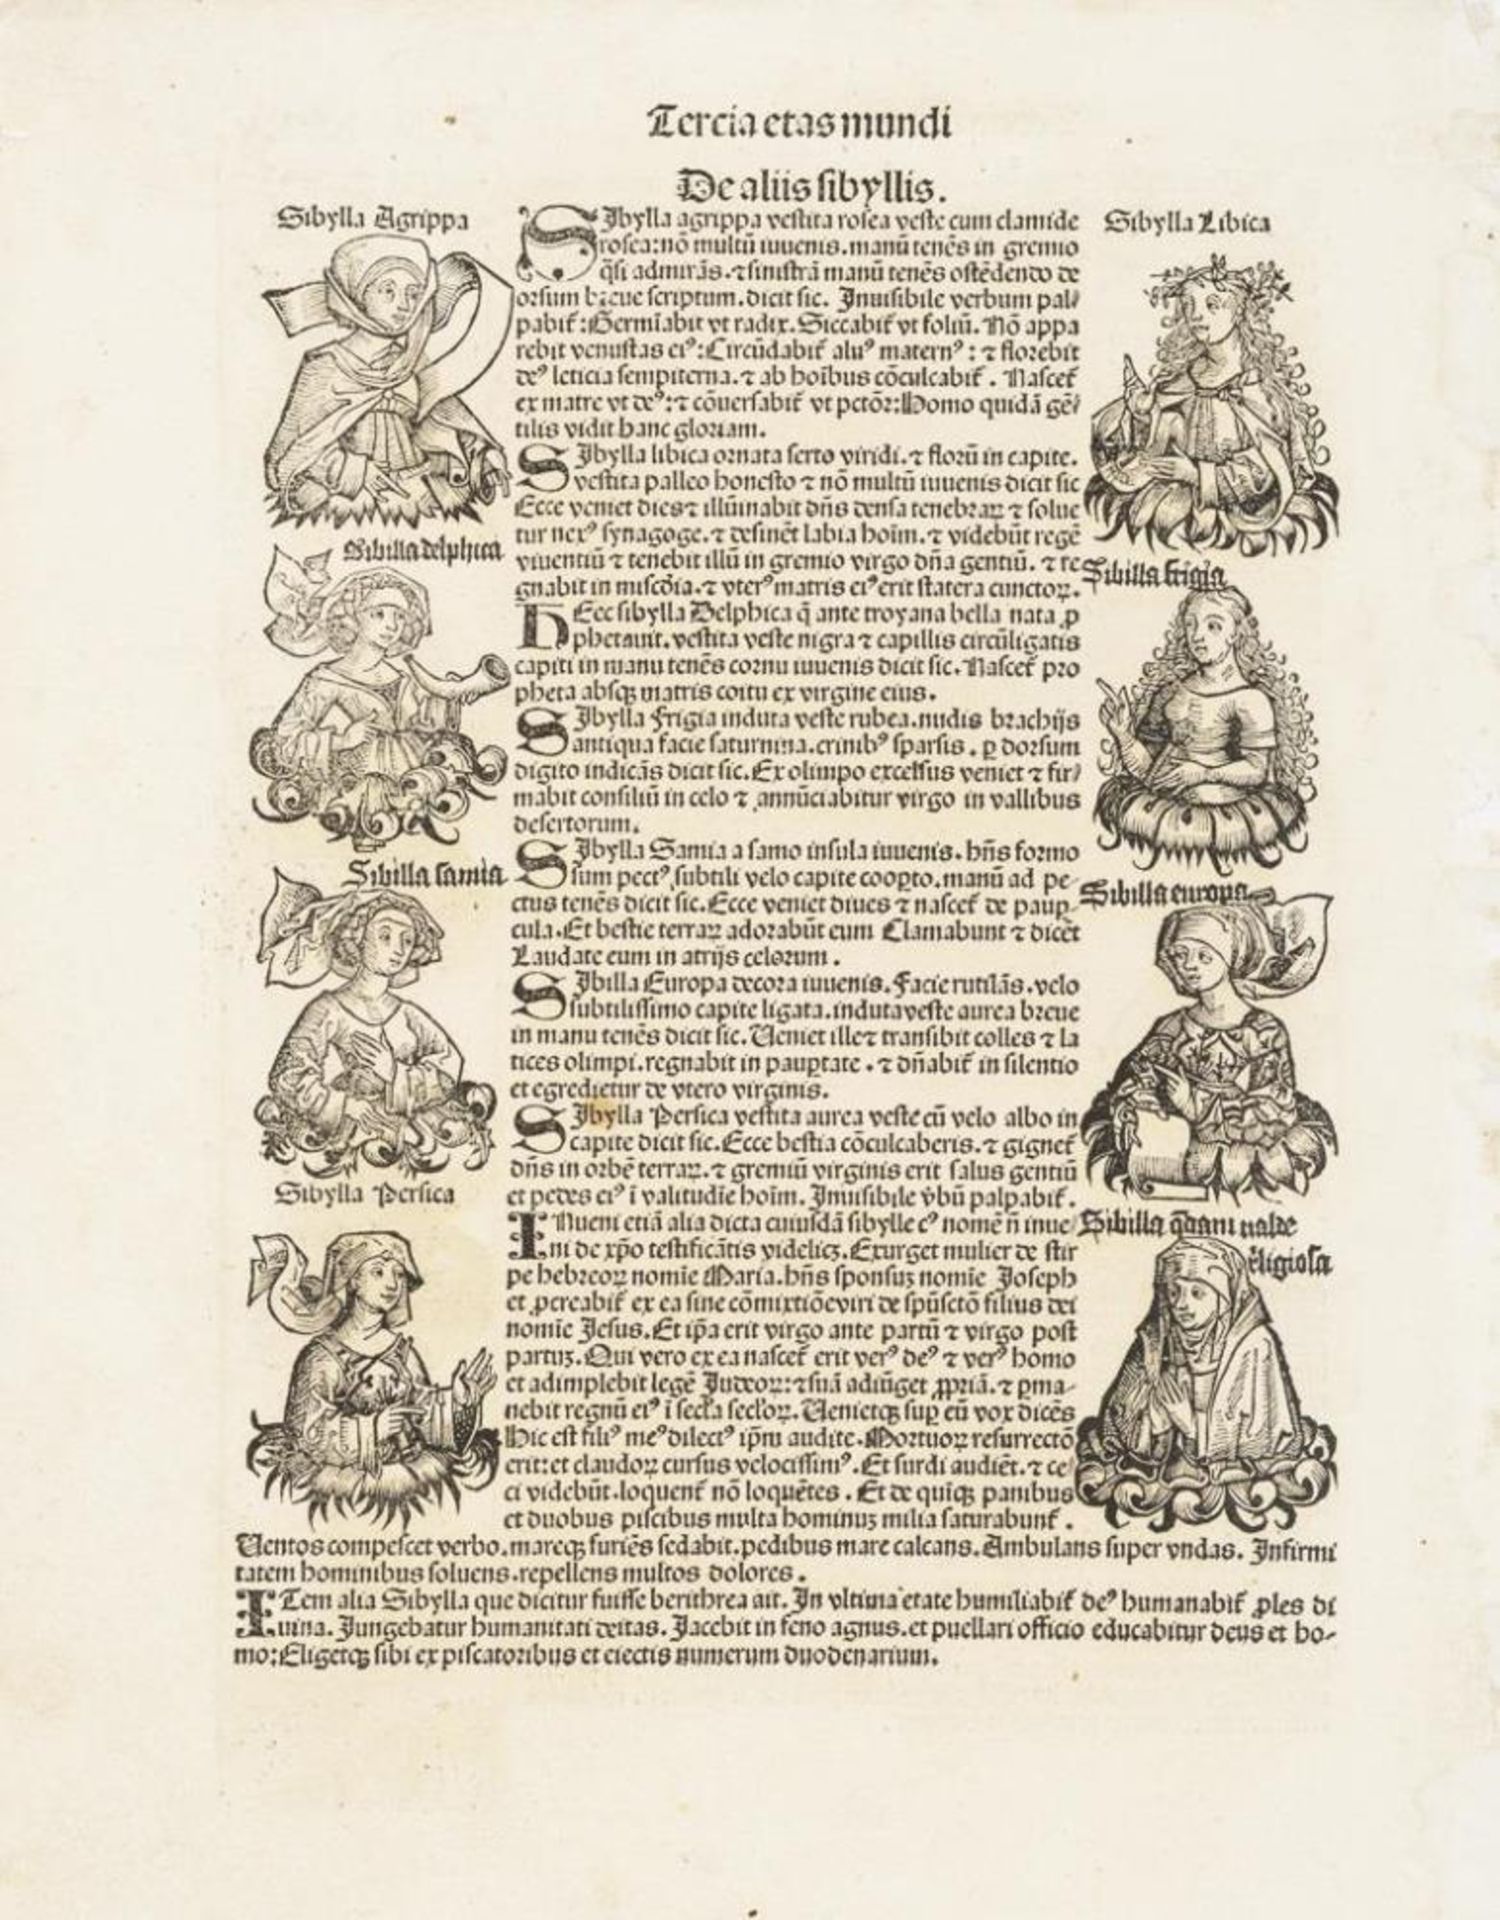 SCHEDEL, Hartmann (1440 Nürnberg - 1493 Nürnberg). Originalblatt aus der Schedelschen Weltchronik.